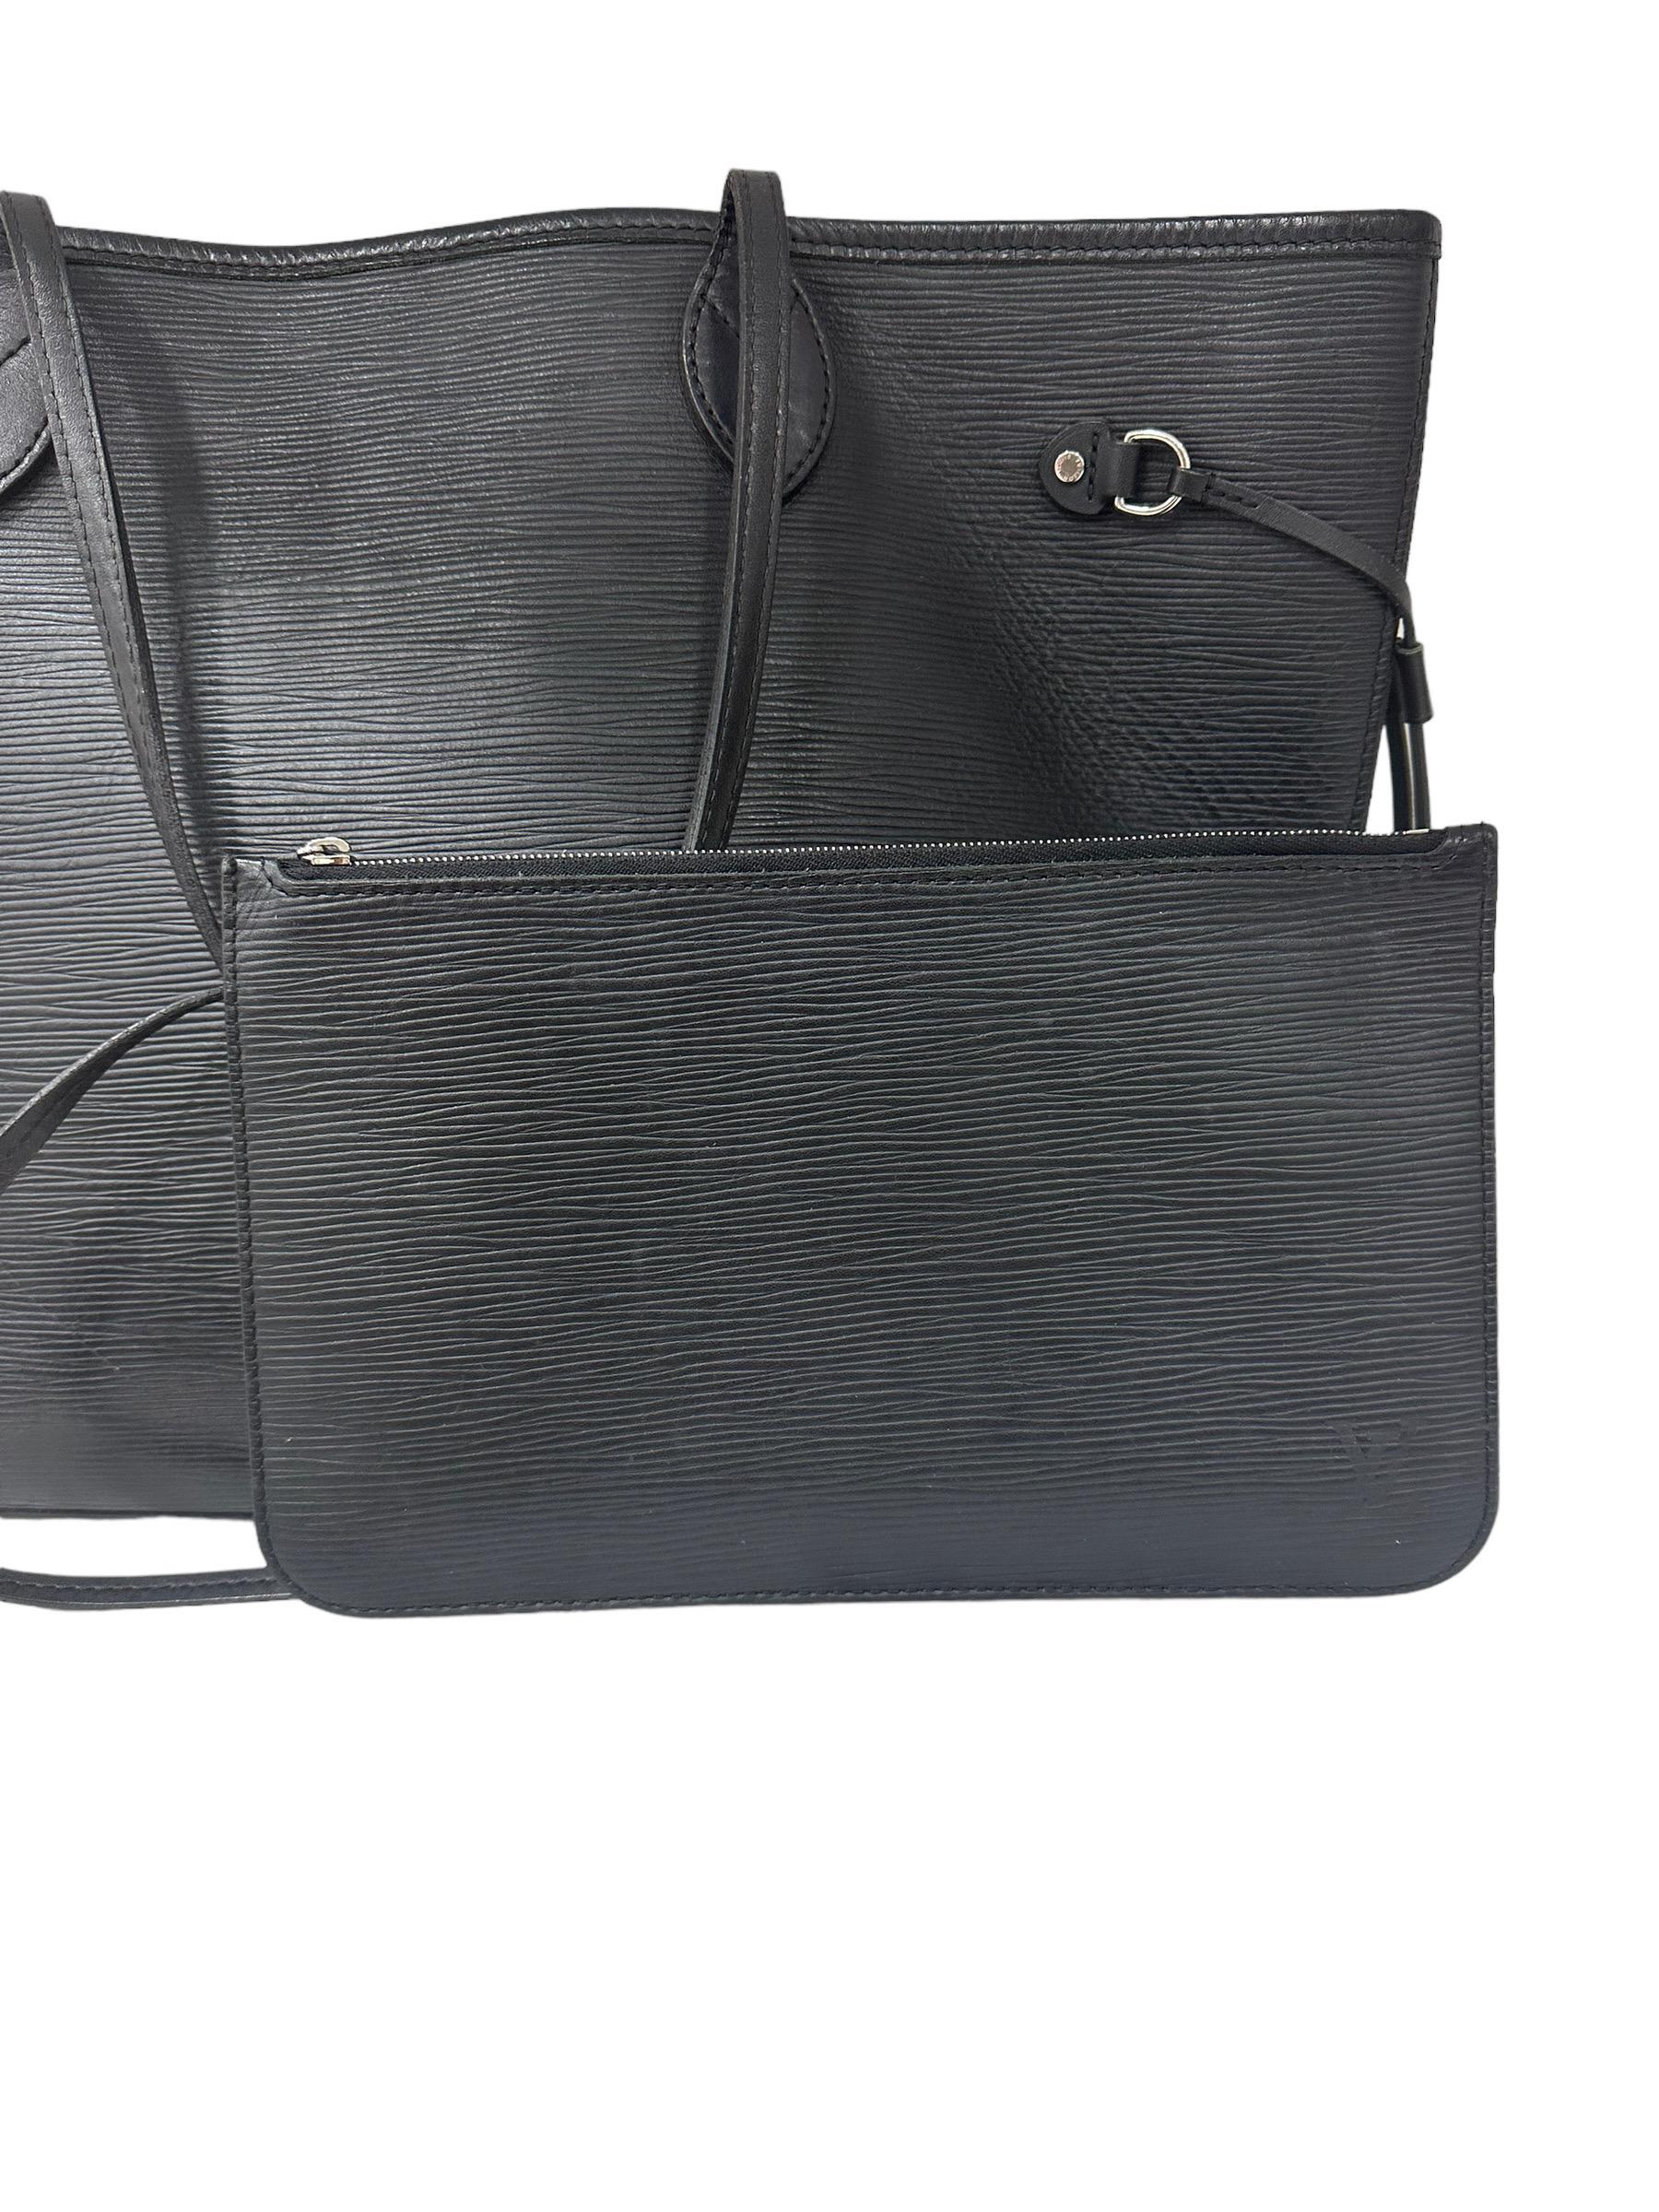 Louis Vuitton Neverfull MM Black Epi Leather Shoulder Bag 7